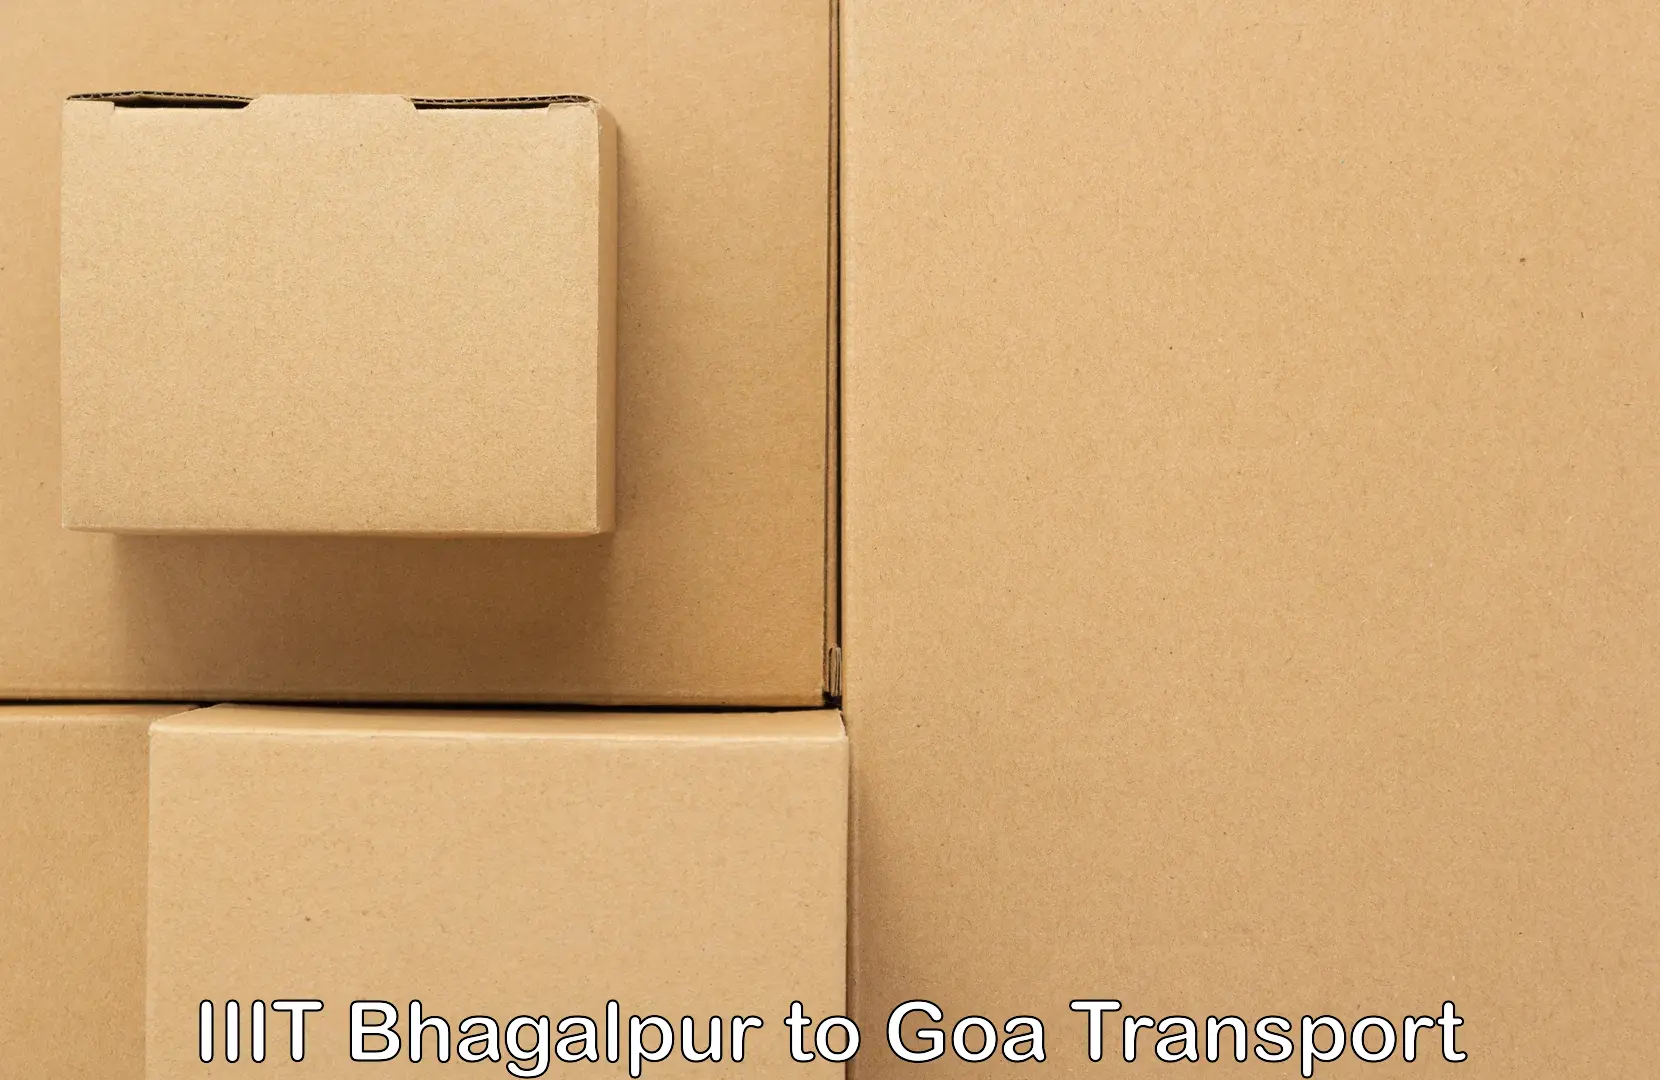 Lorry transport service IIIT Bhagalpur to Goa University